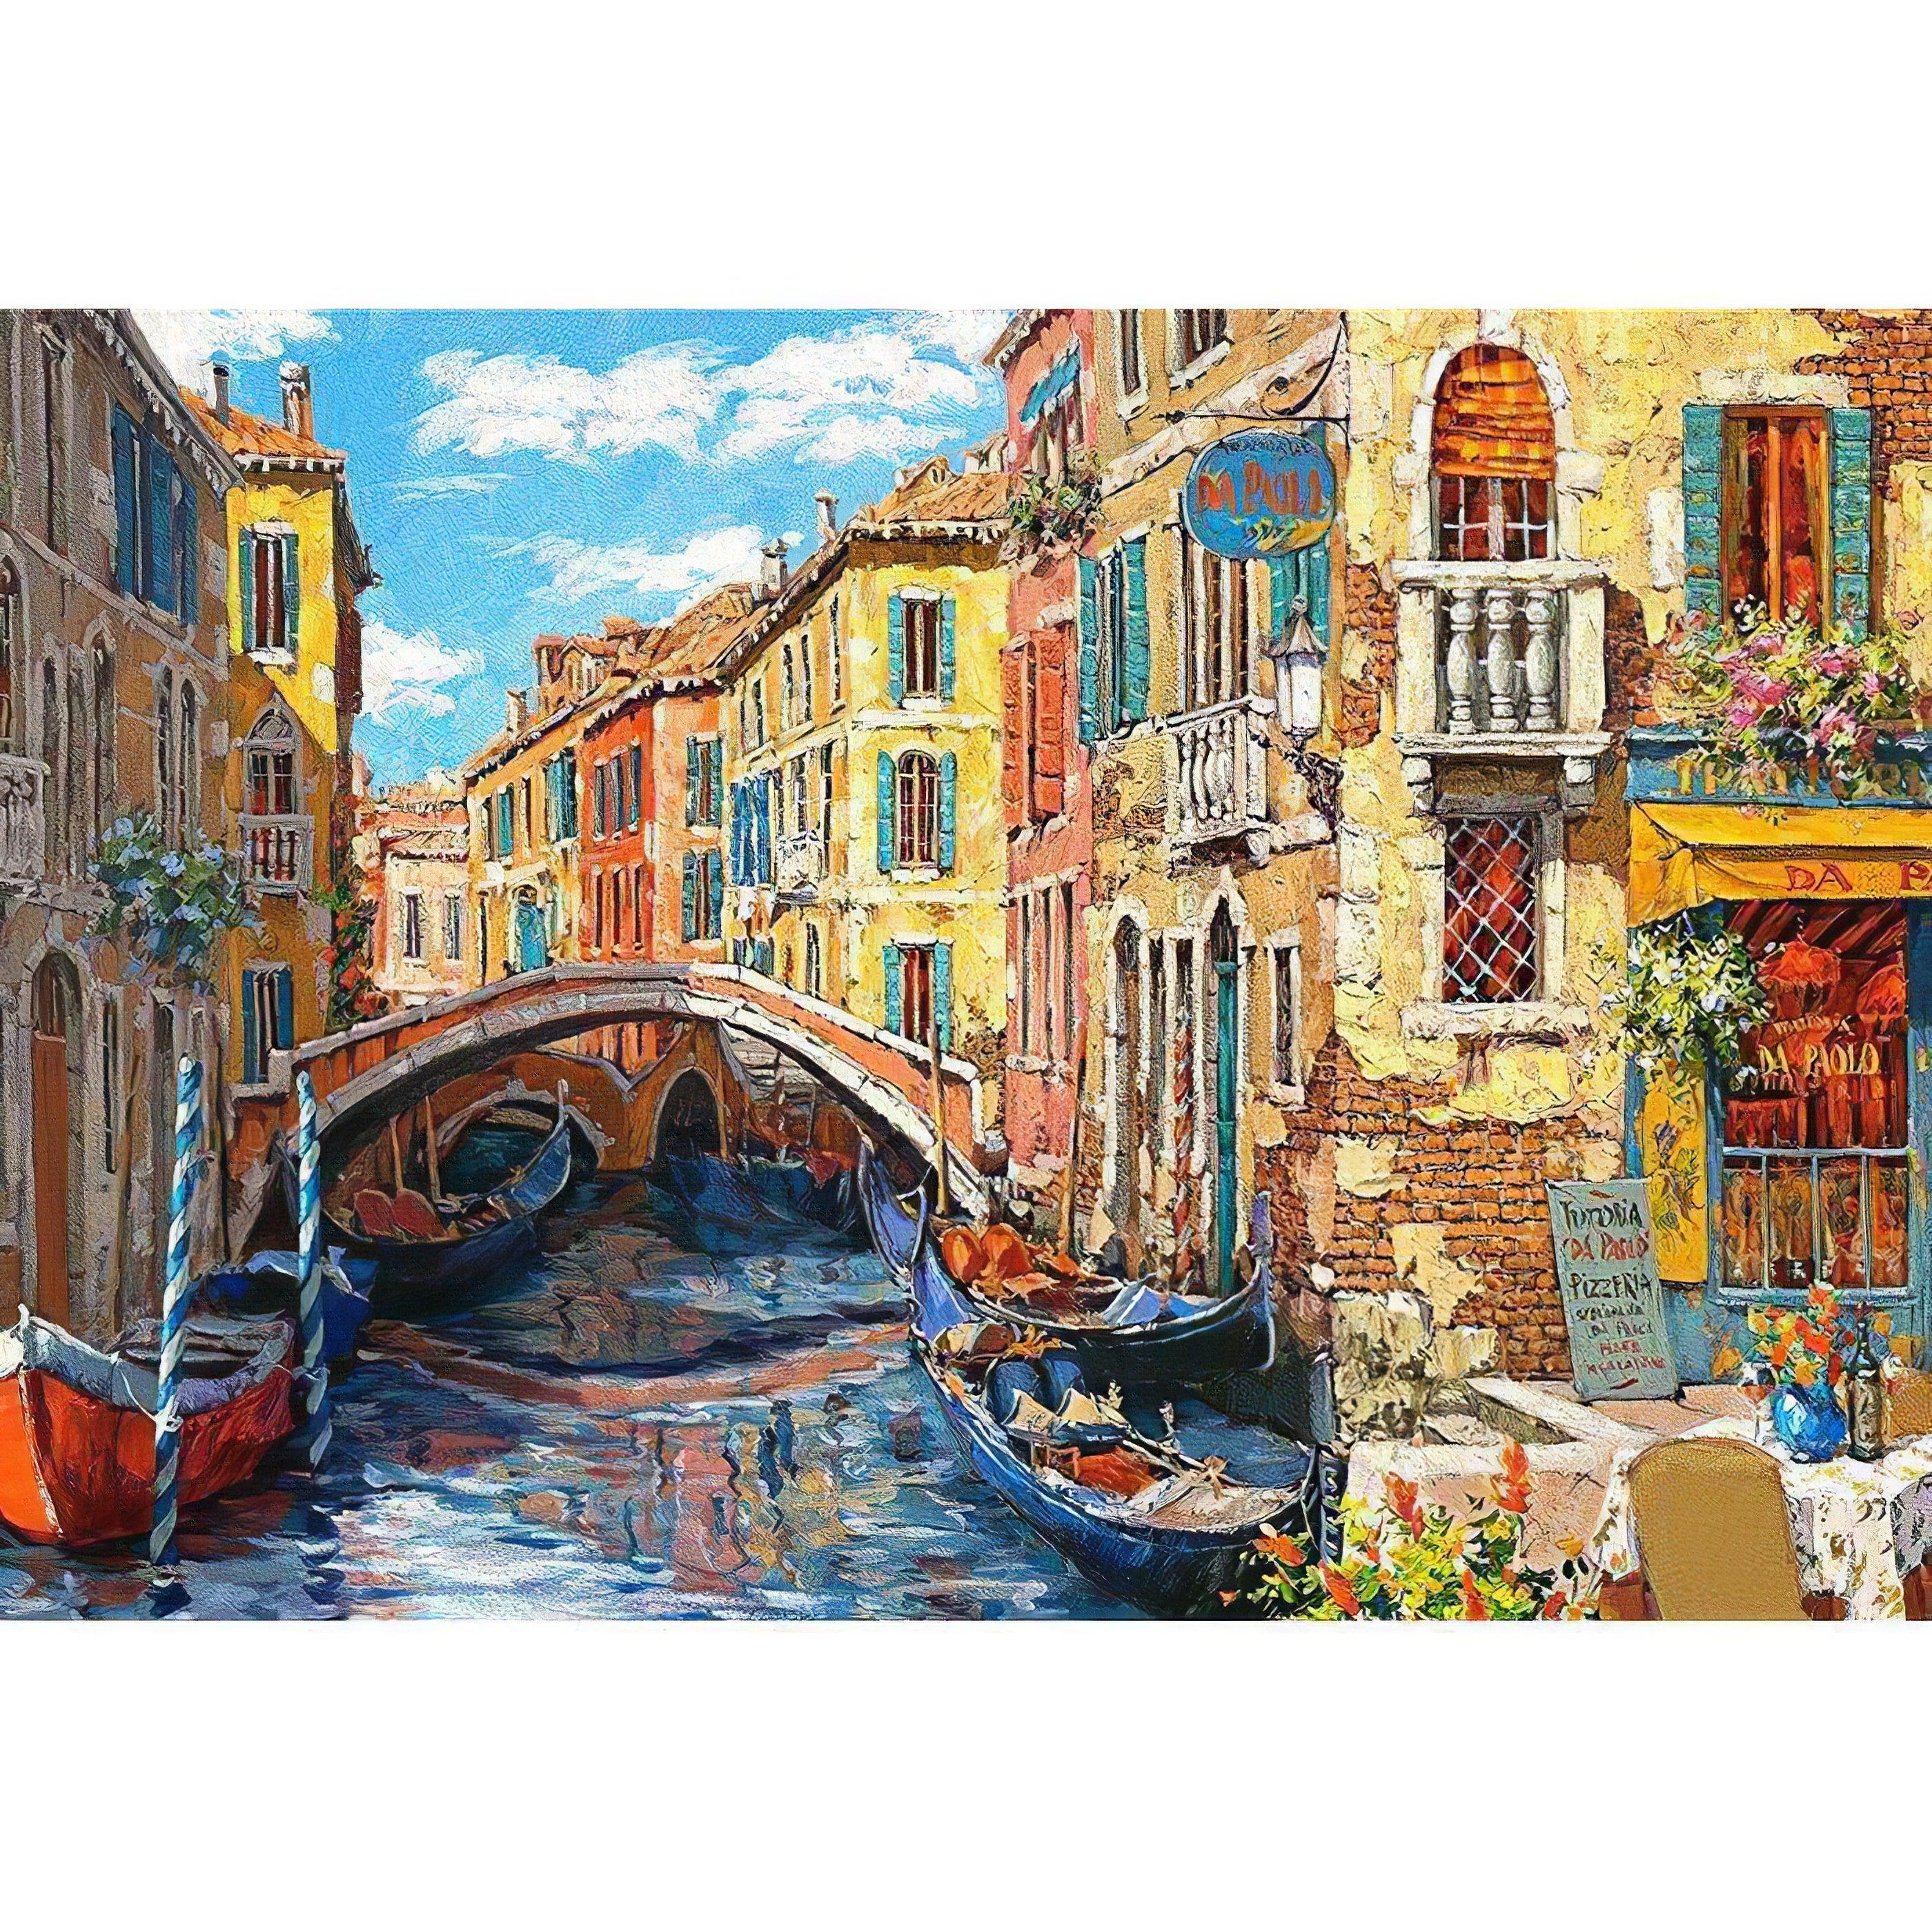 Bridge And River Of Venice